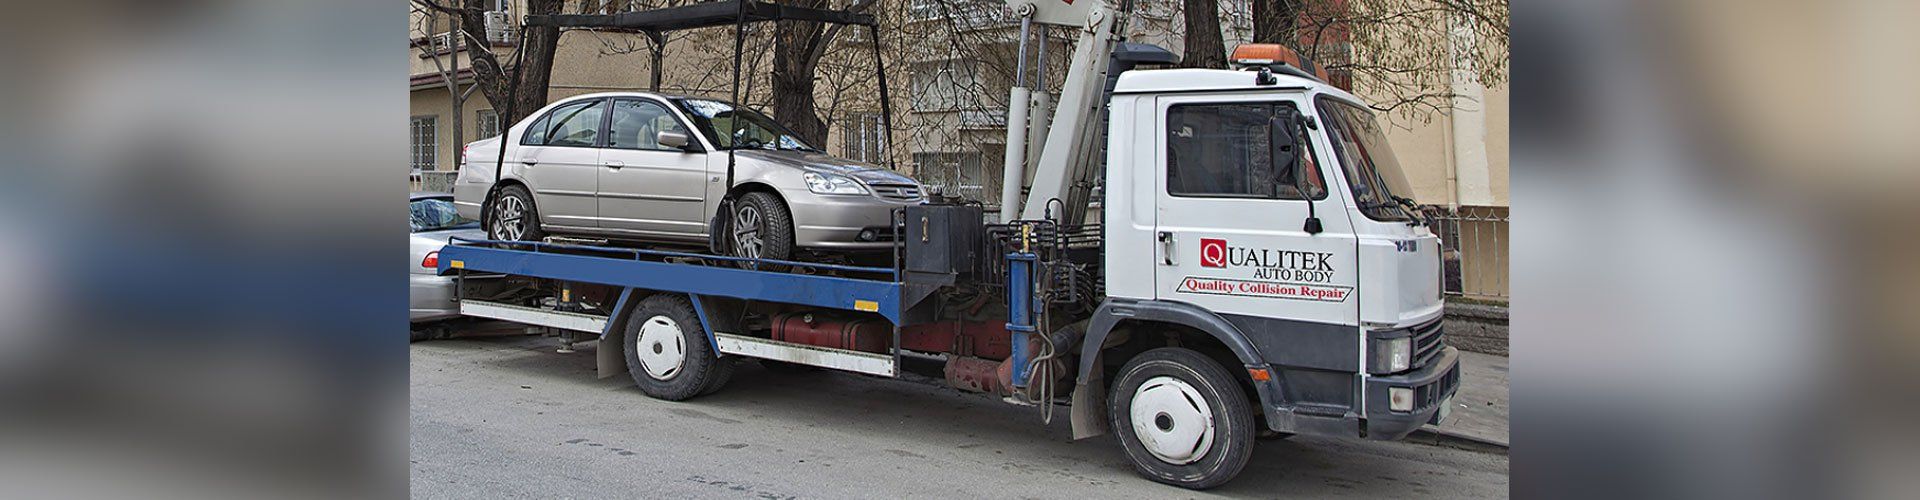 Qualitek Auto Body - Service Truck